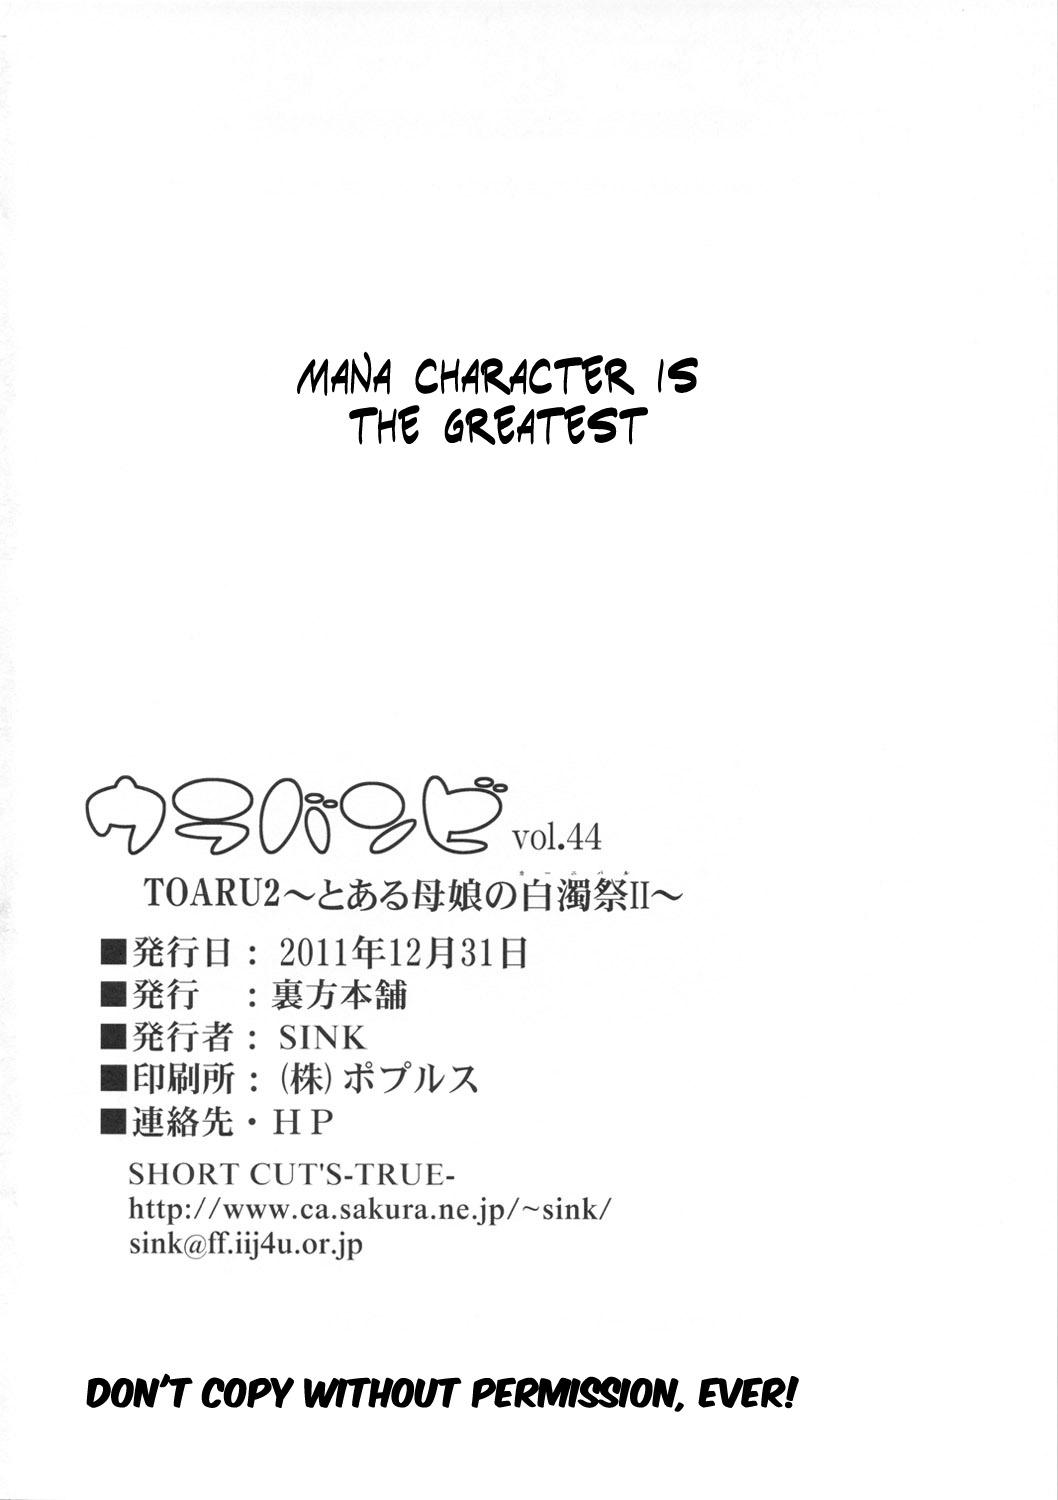 Rola Urabambi Vol. 44 TOARU 2 - Toaru kagaku no railgun Toaru majutsu no index Perfect Teen - Page 25